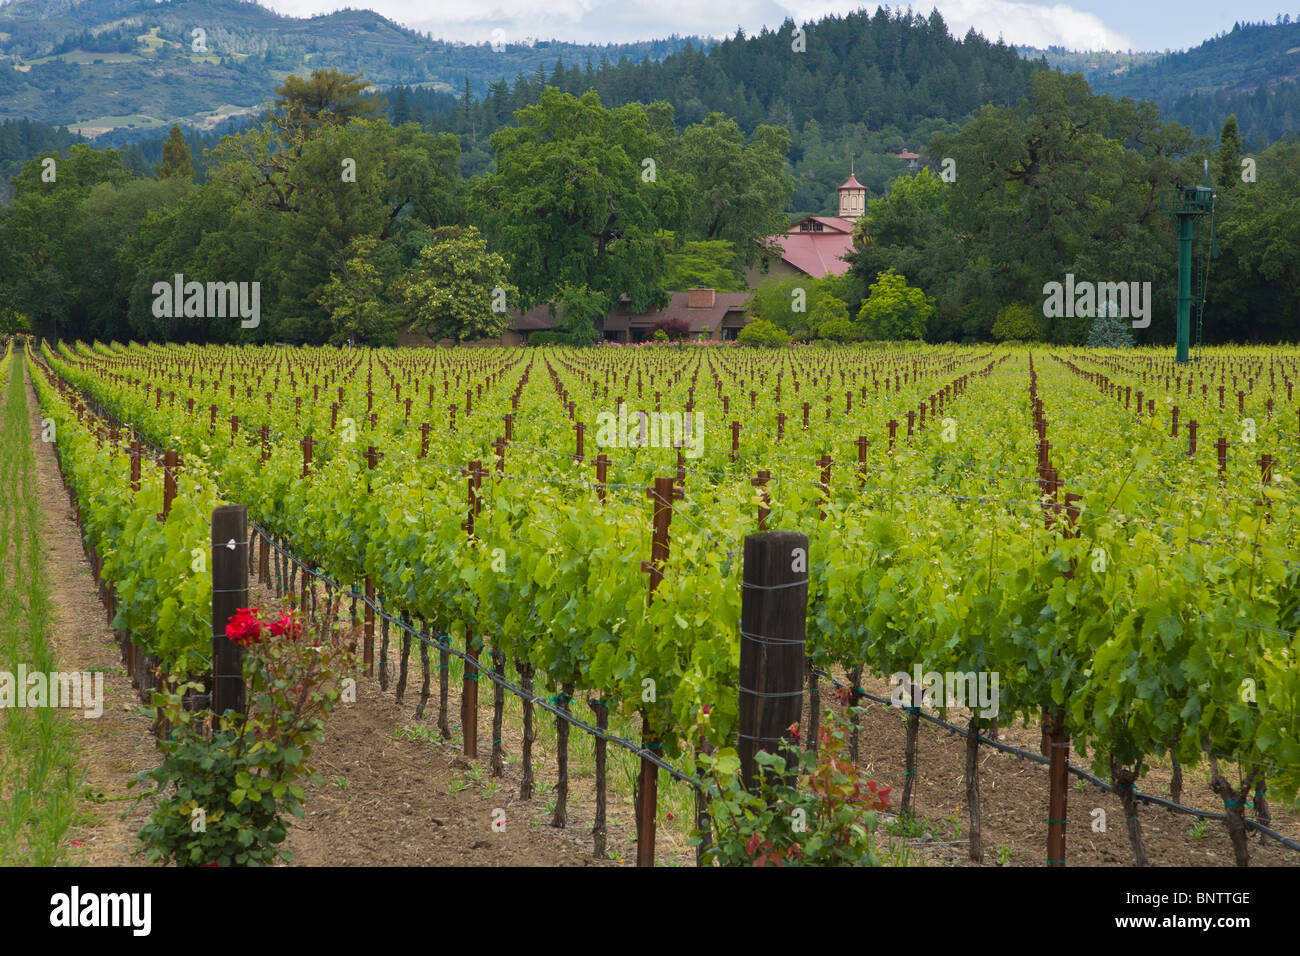 Spring grape vineyards in Napa Valley California Stock Photo